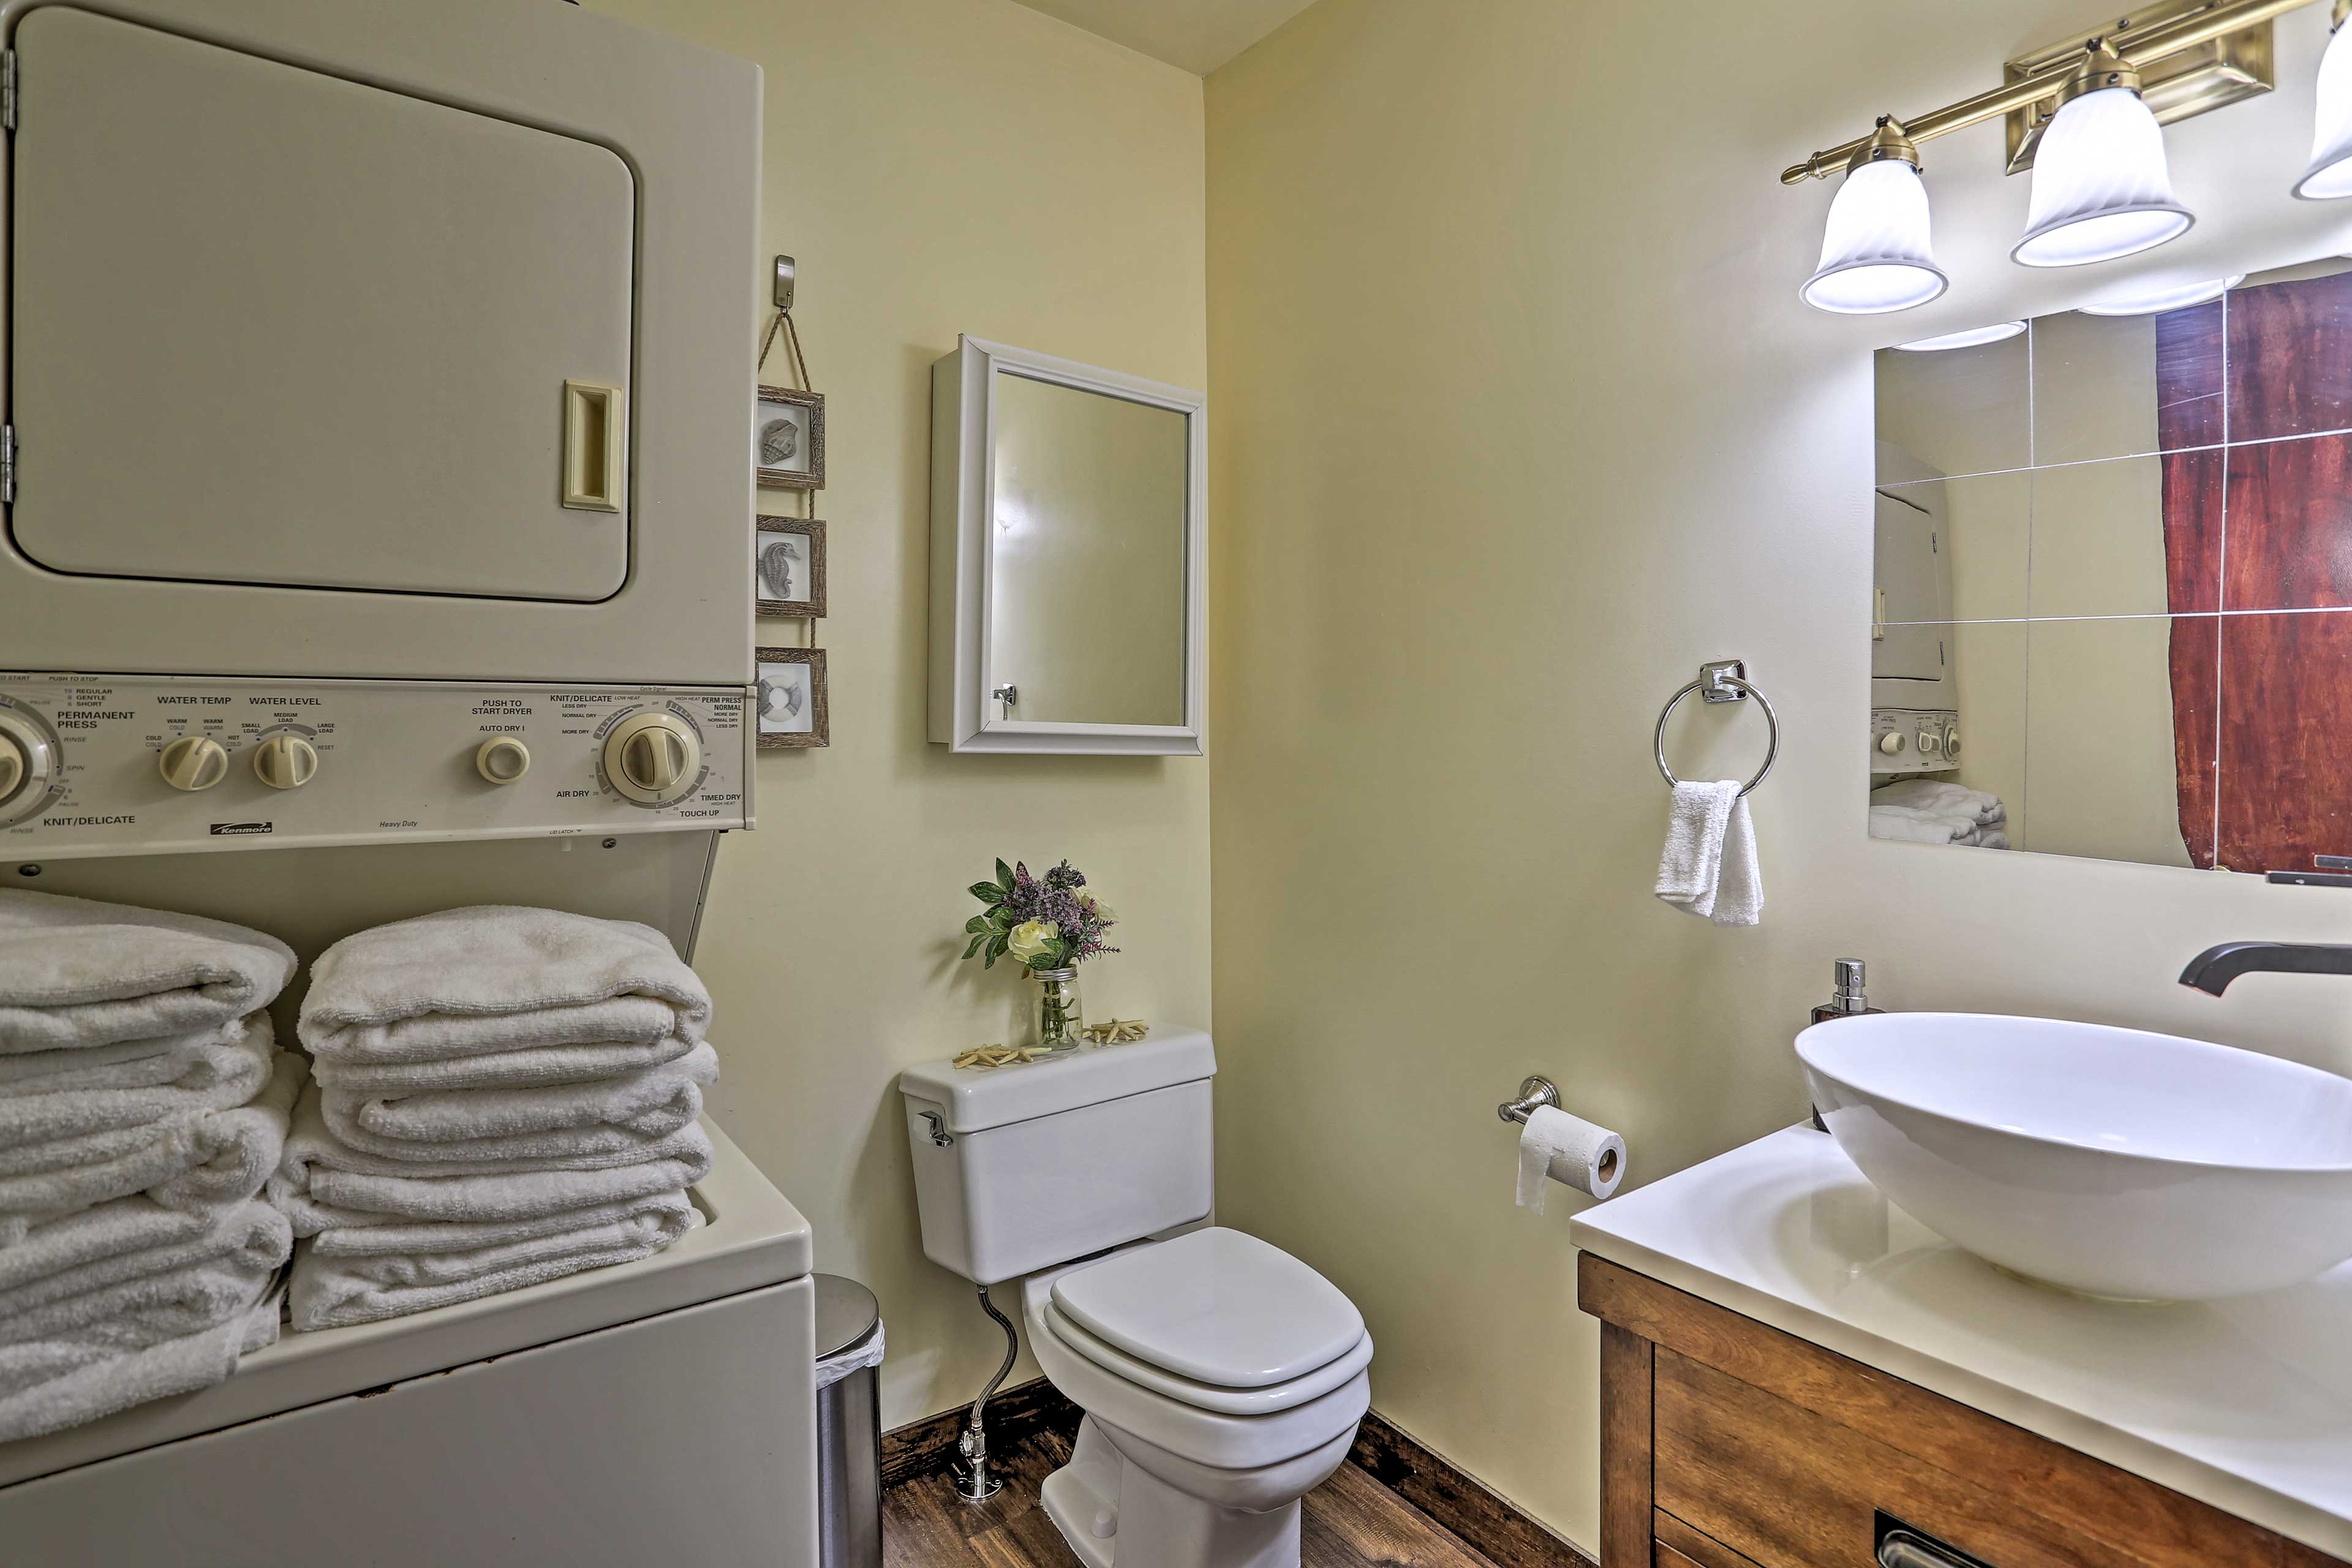 Full Bathroom | Complimentary Toiletries | Hair Dryer